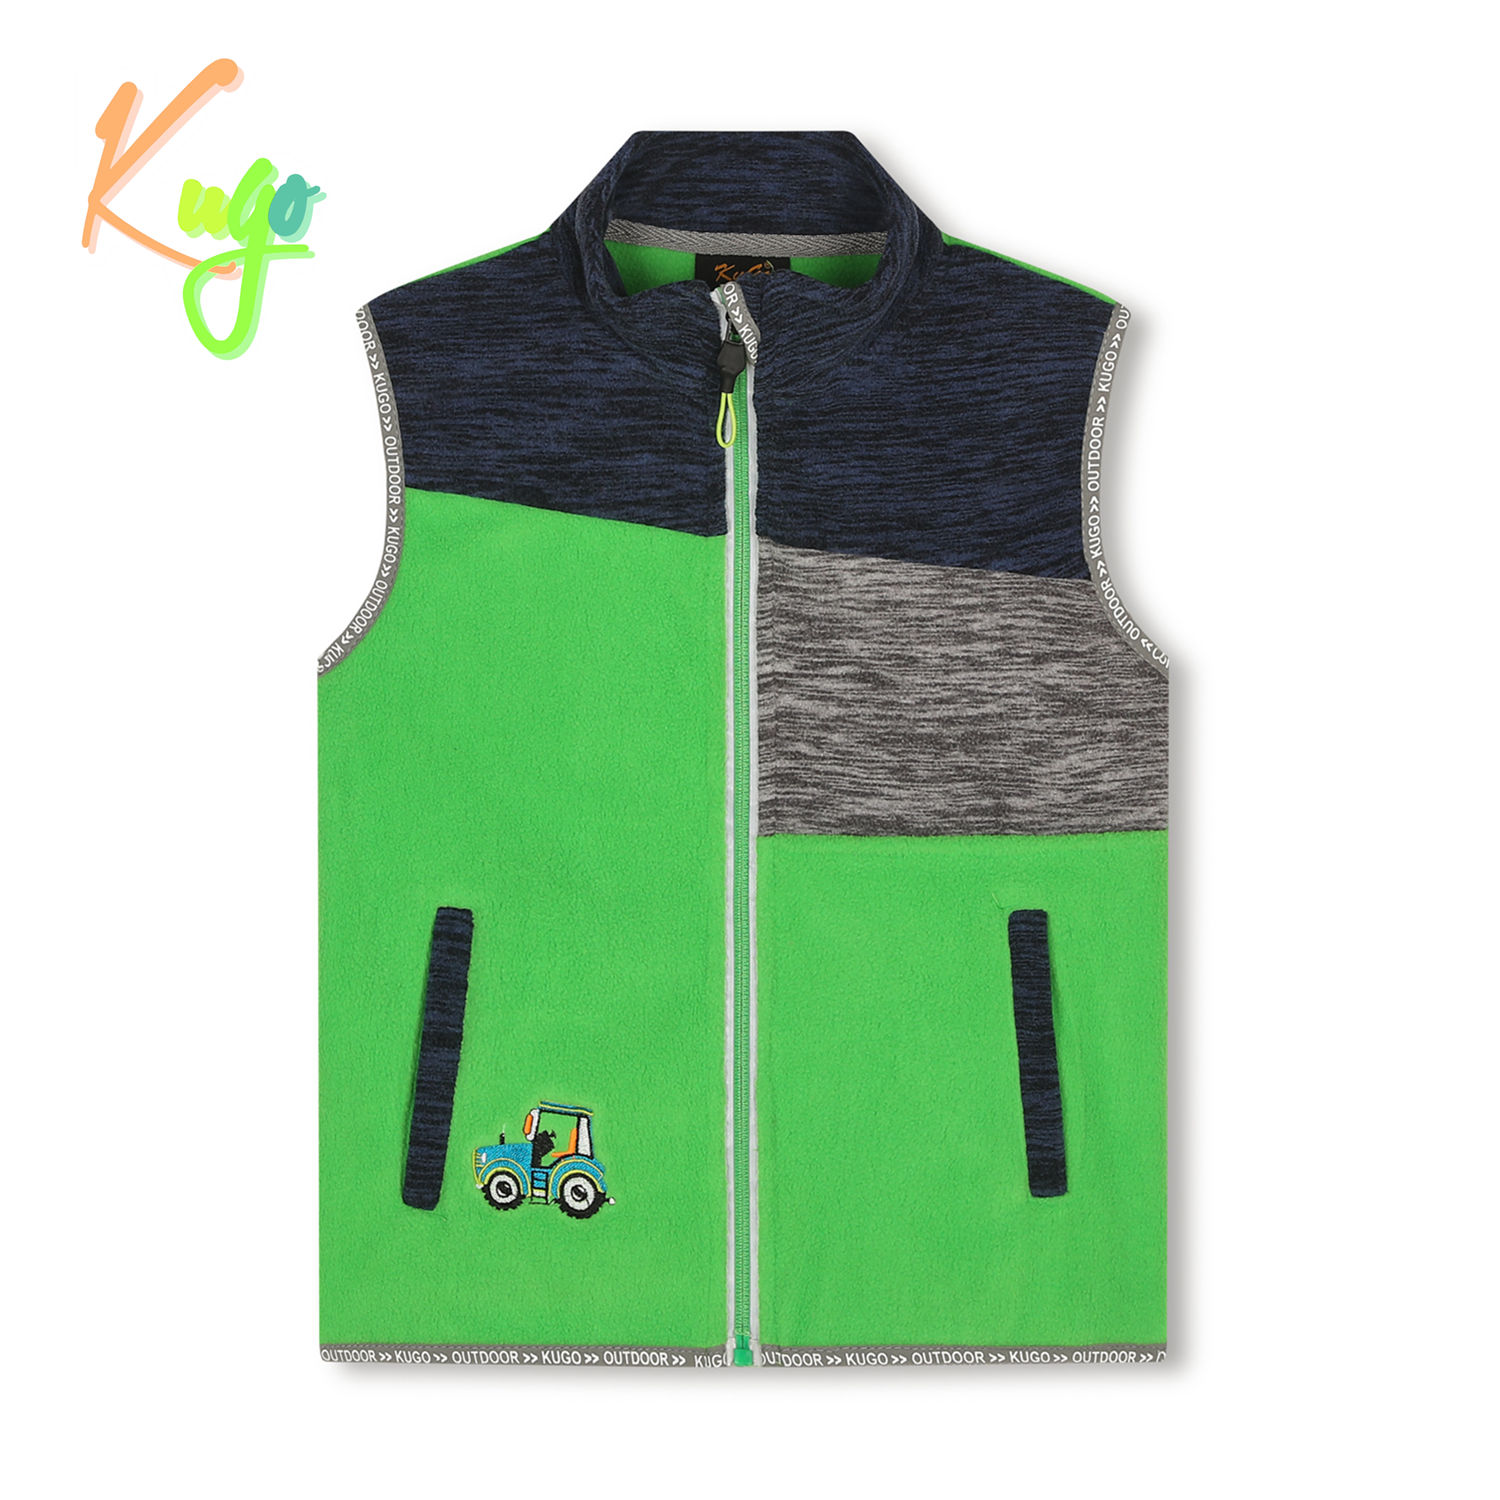 Chlapecká flísová vesta- KUGO FM8789, zelená Barva: Zelená, Velikost: 128